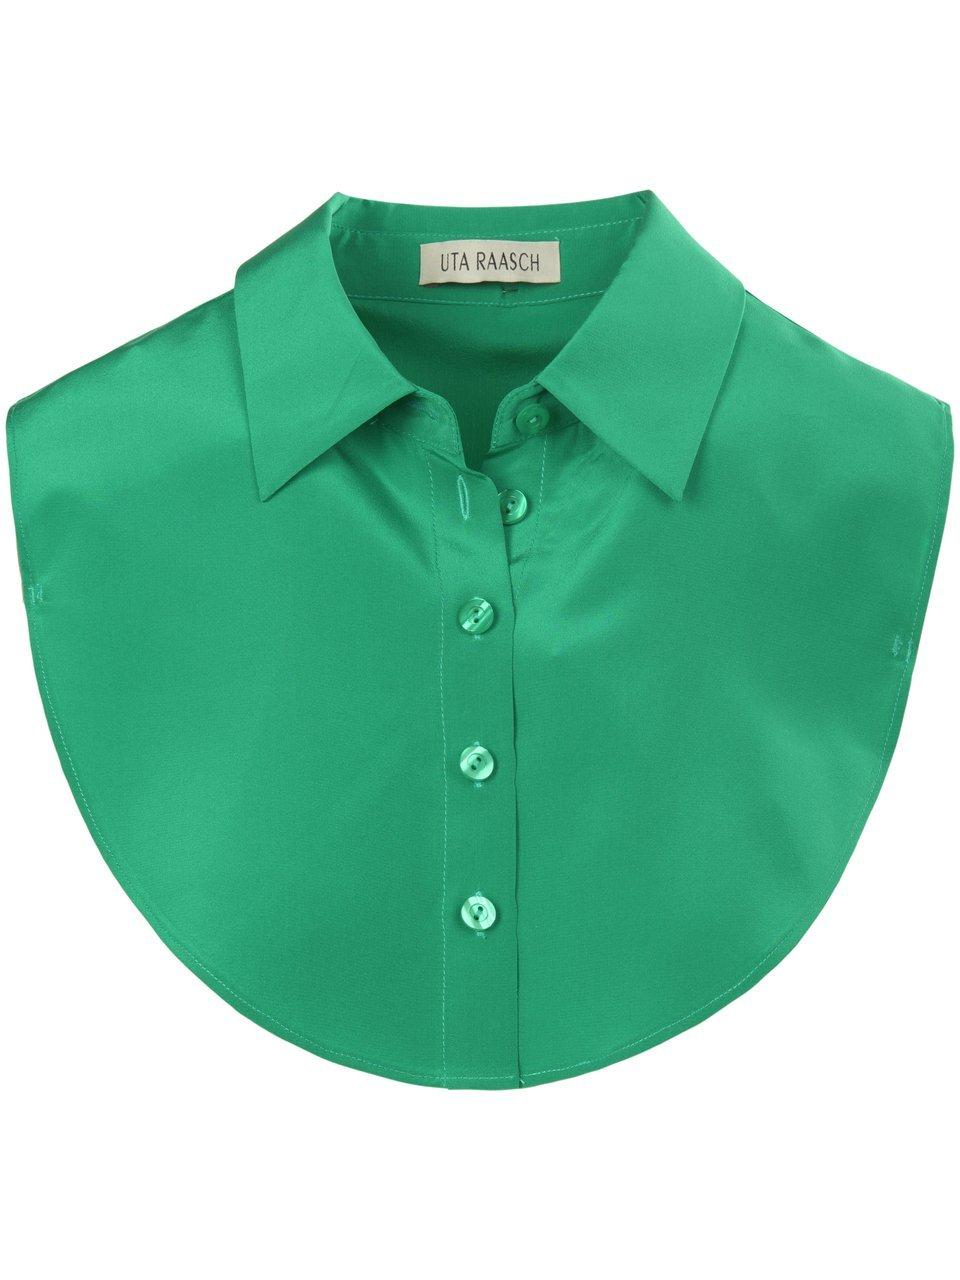 Image of Blouse collar made of 100% silk Uta Raasch green